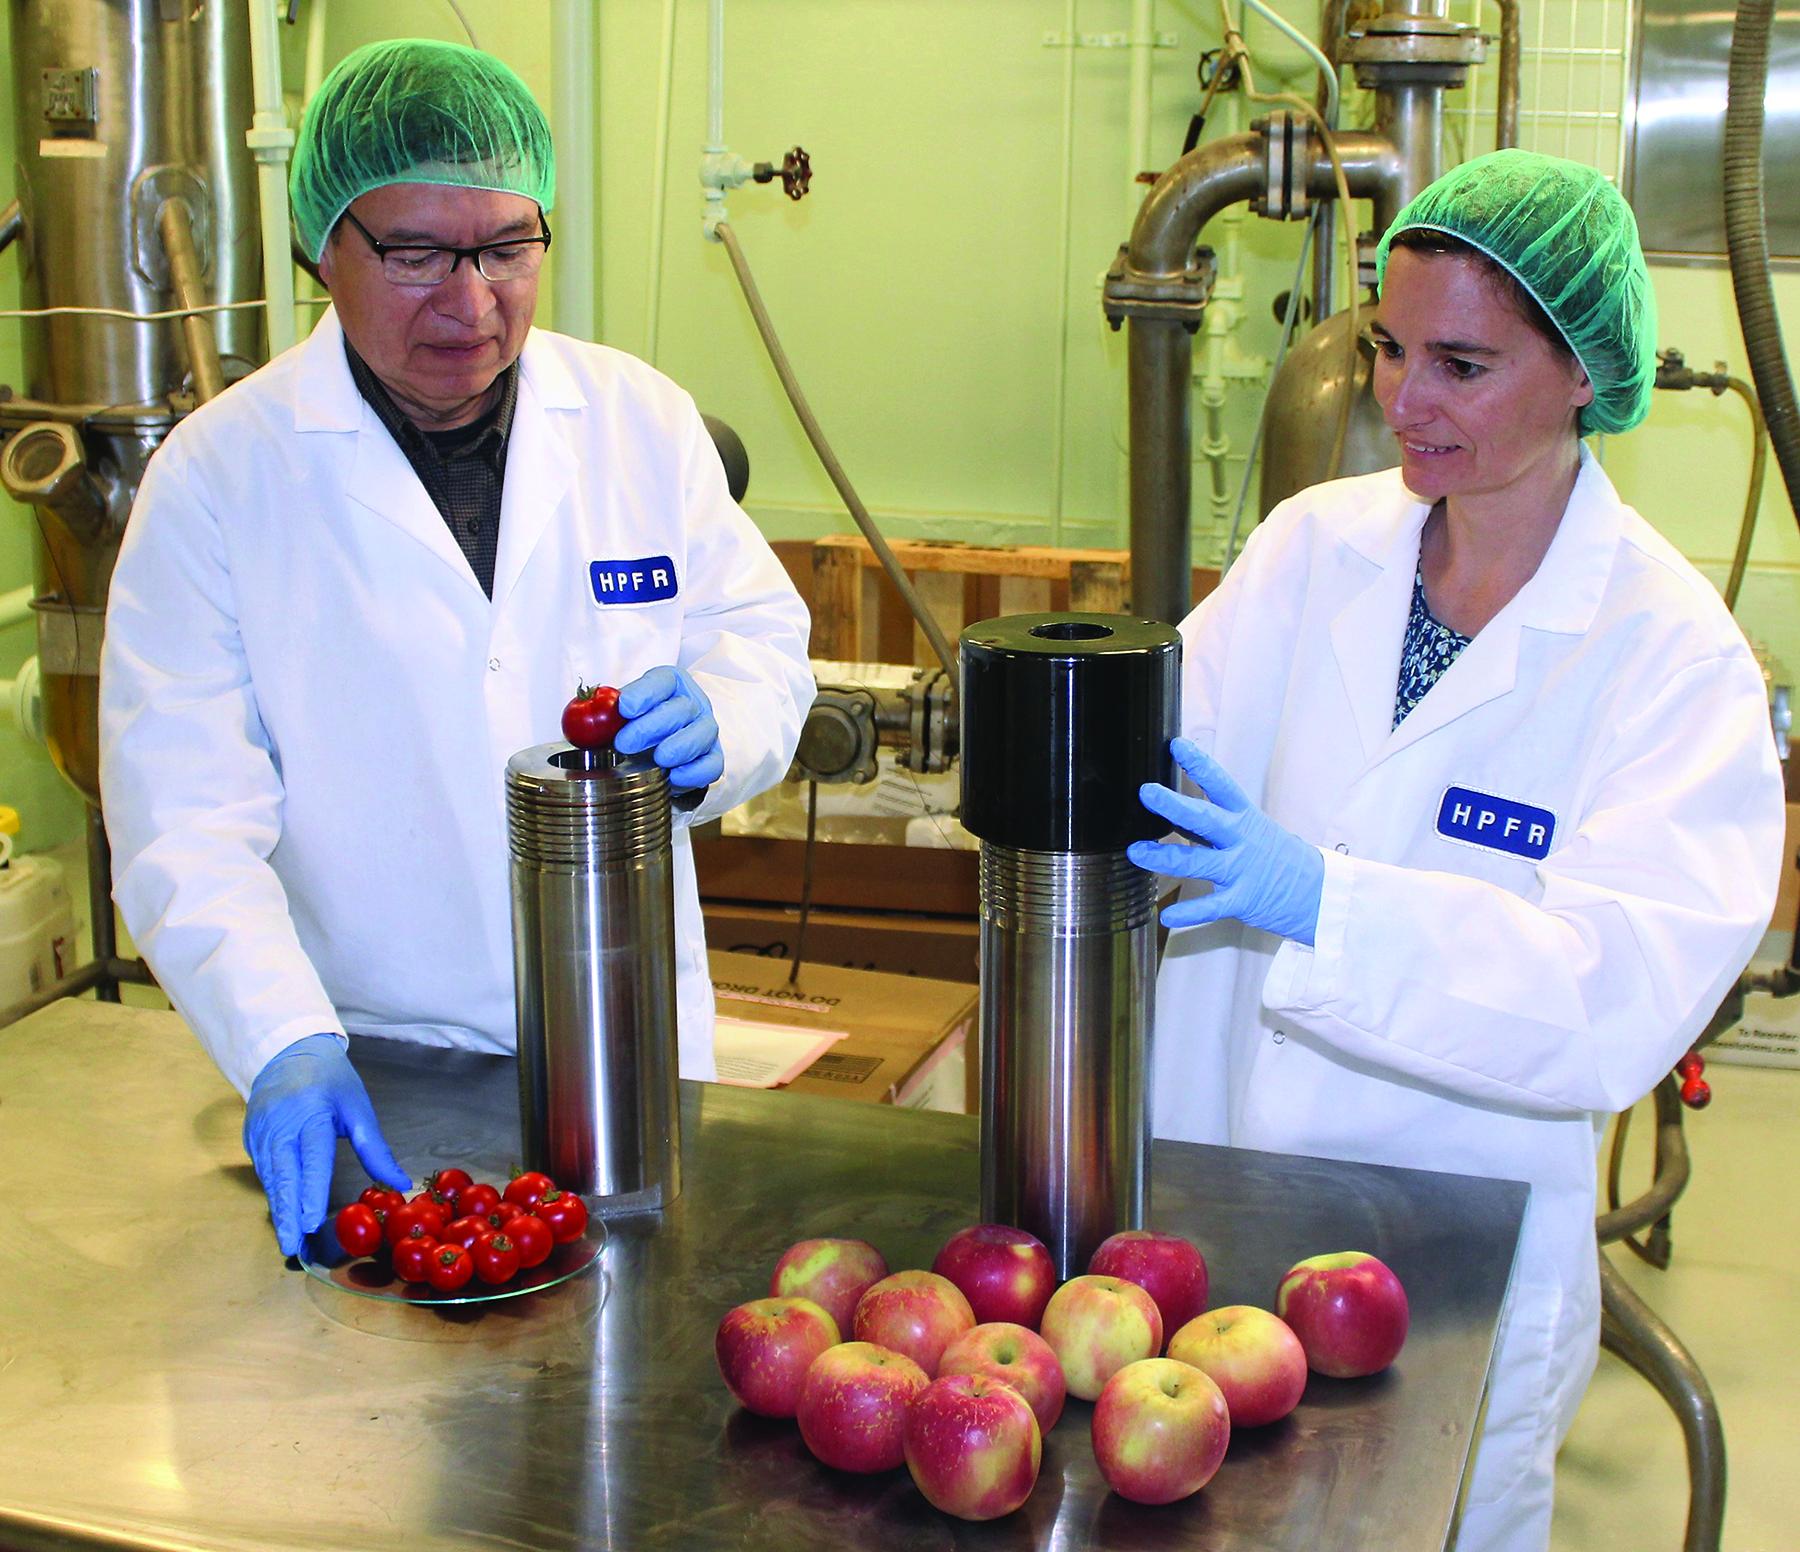 La congélation isochore permet de préserver les aliments frais tels que les pommes, les pommes de terre ou les tomates. © Département américain de l’Agriculture